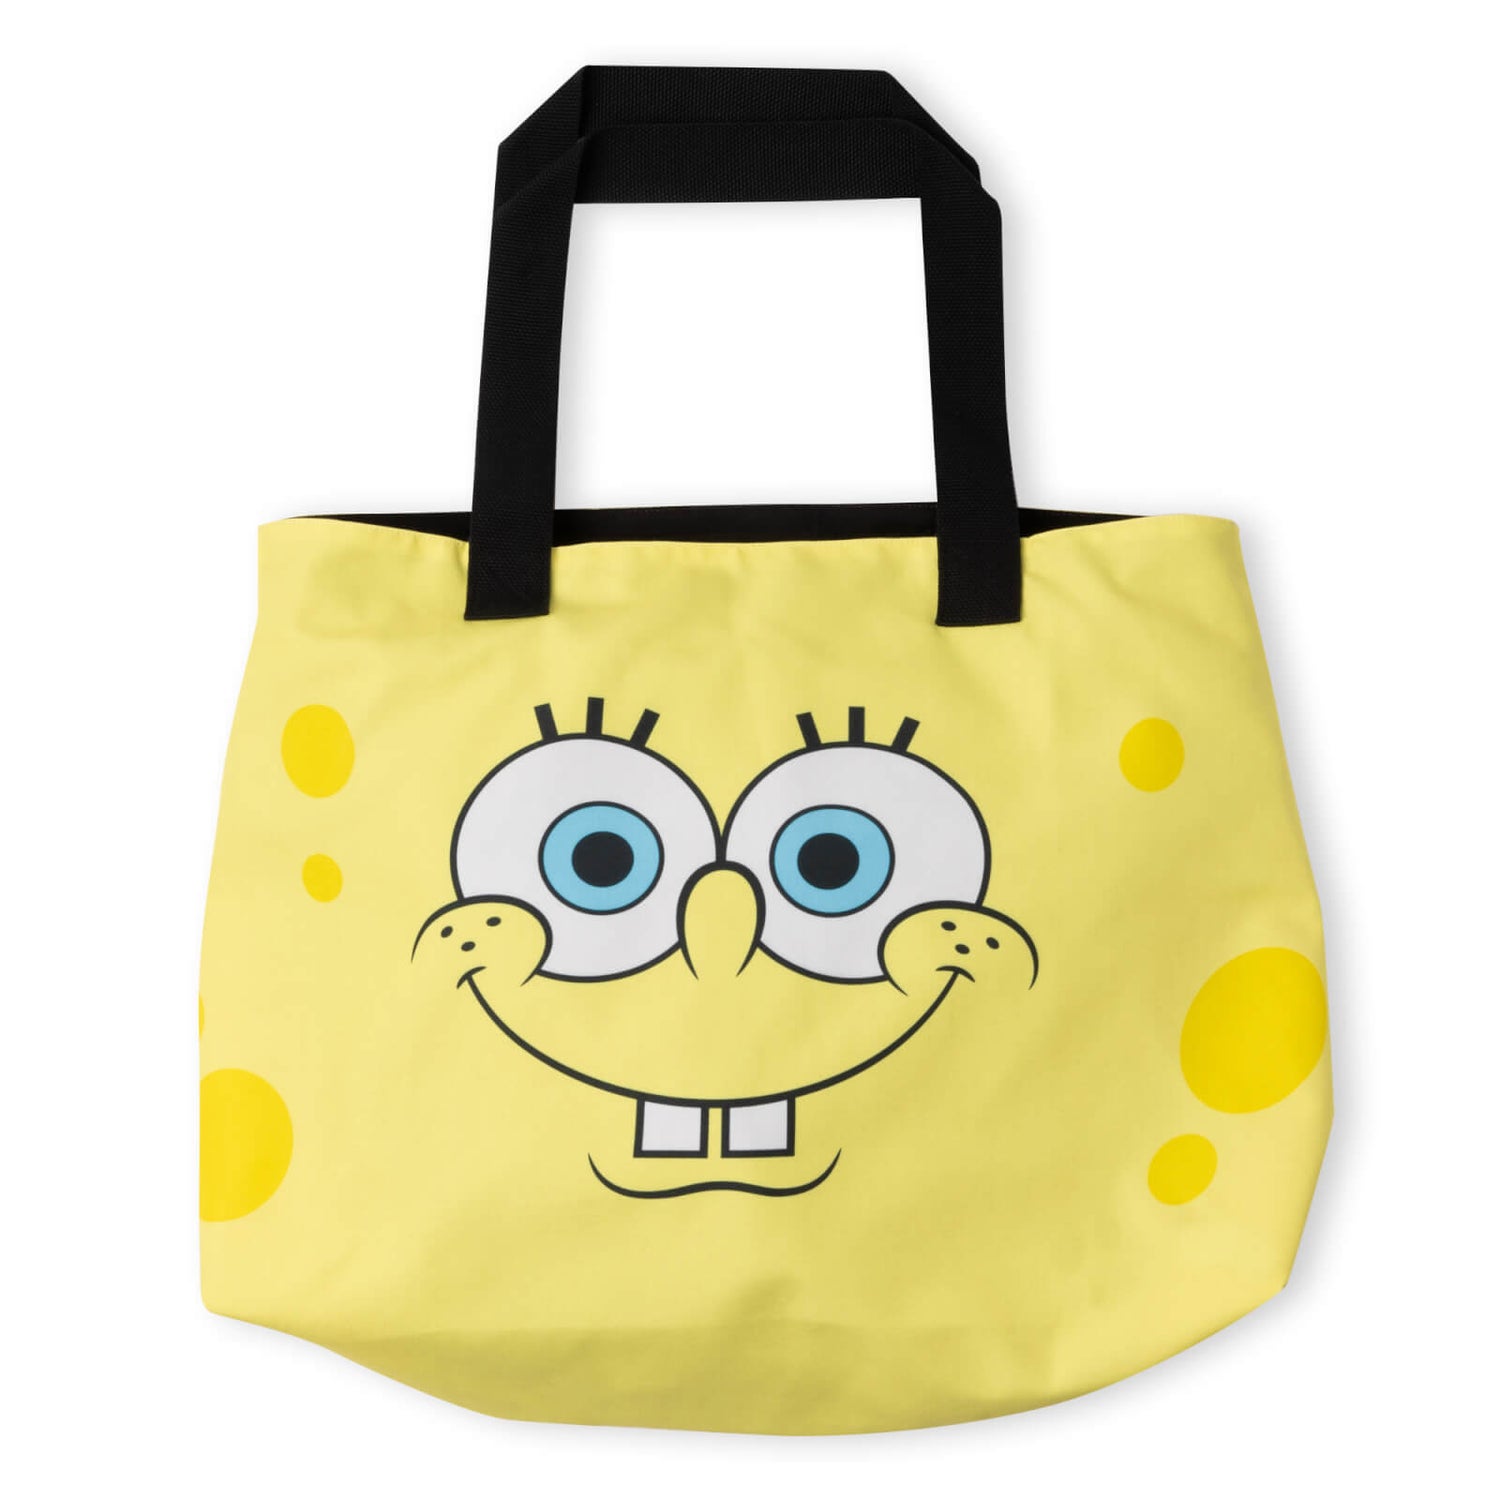 Spongebob Squarepants Face Pattern Tote Bag